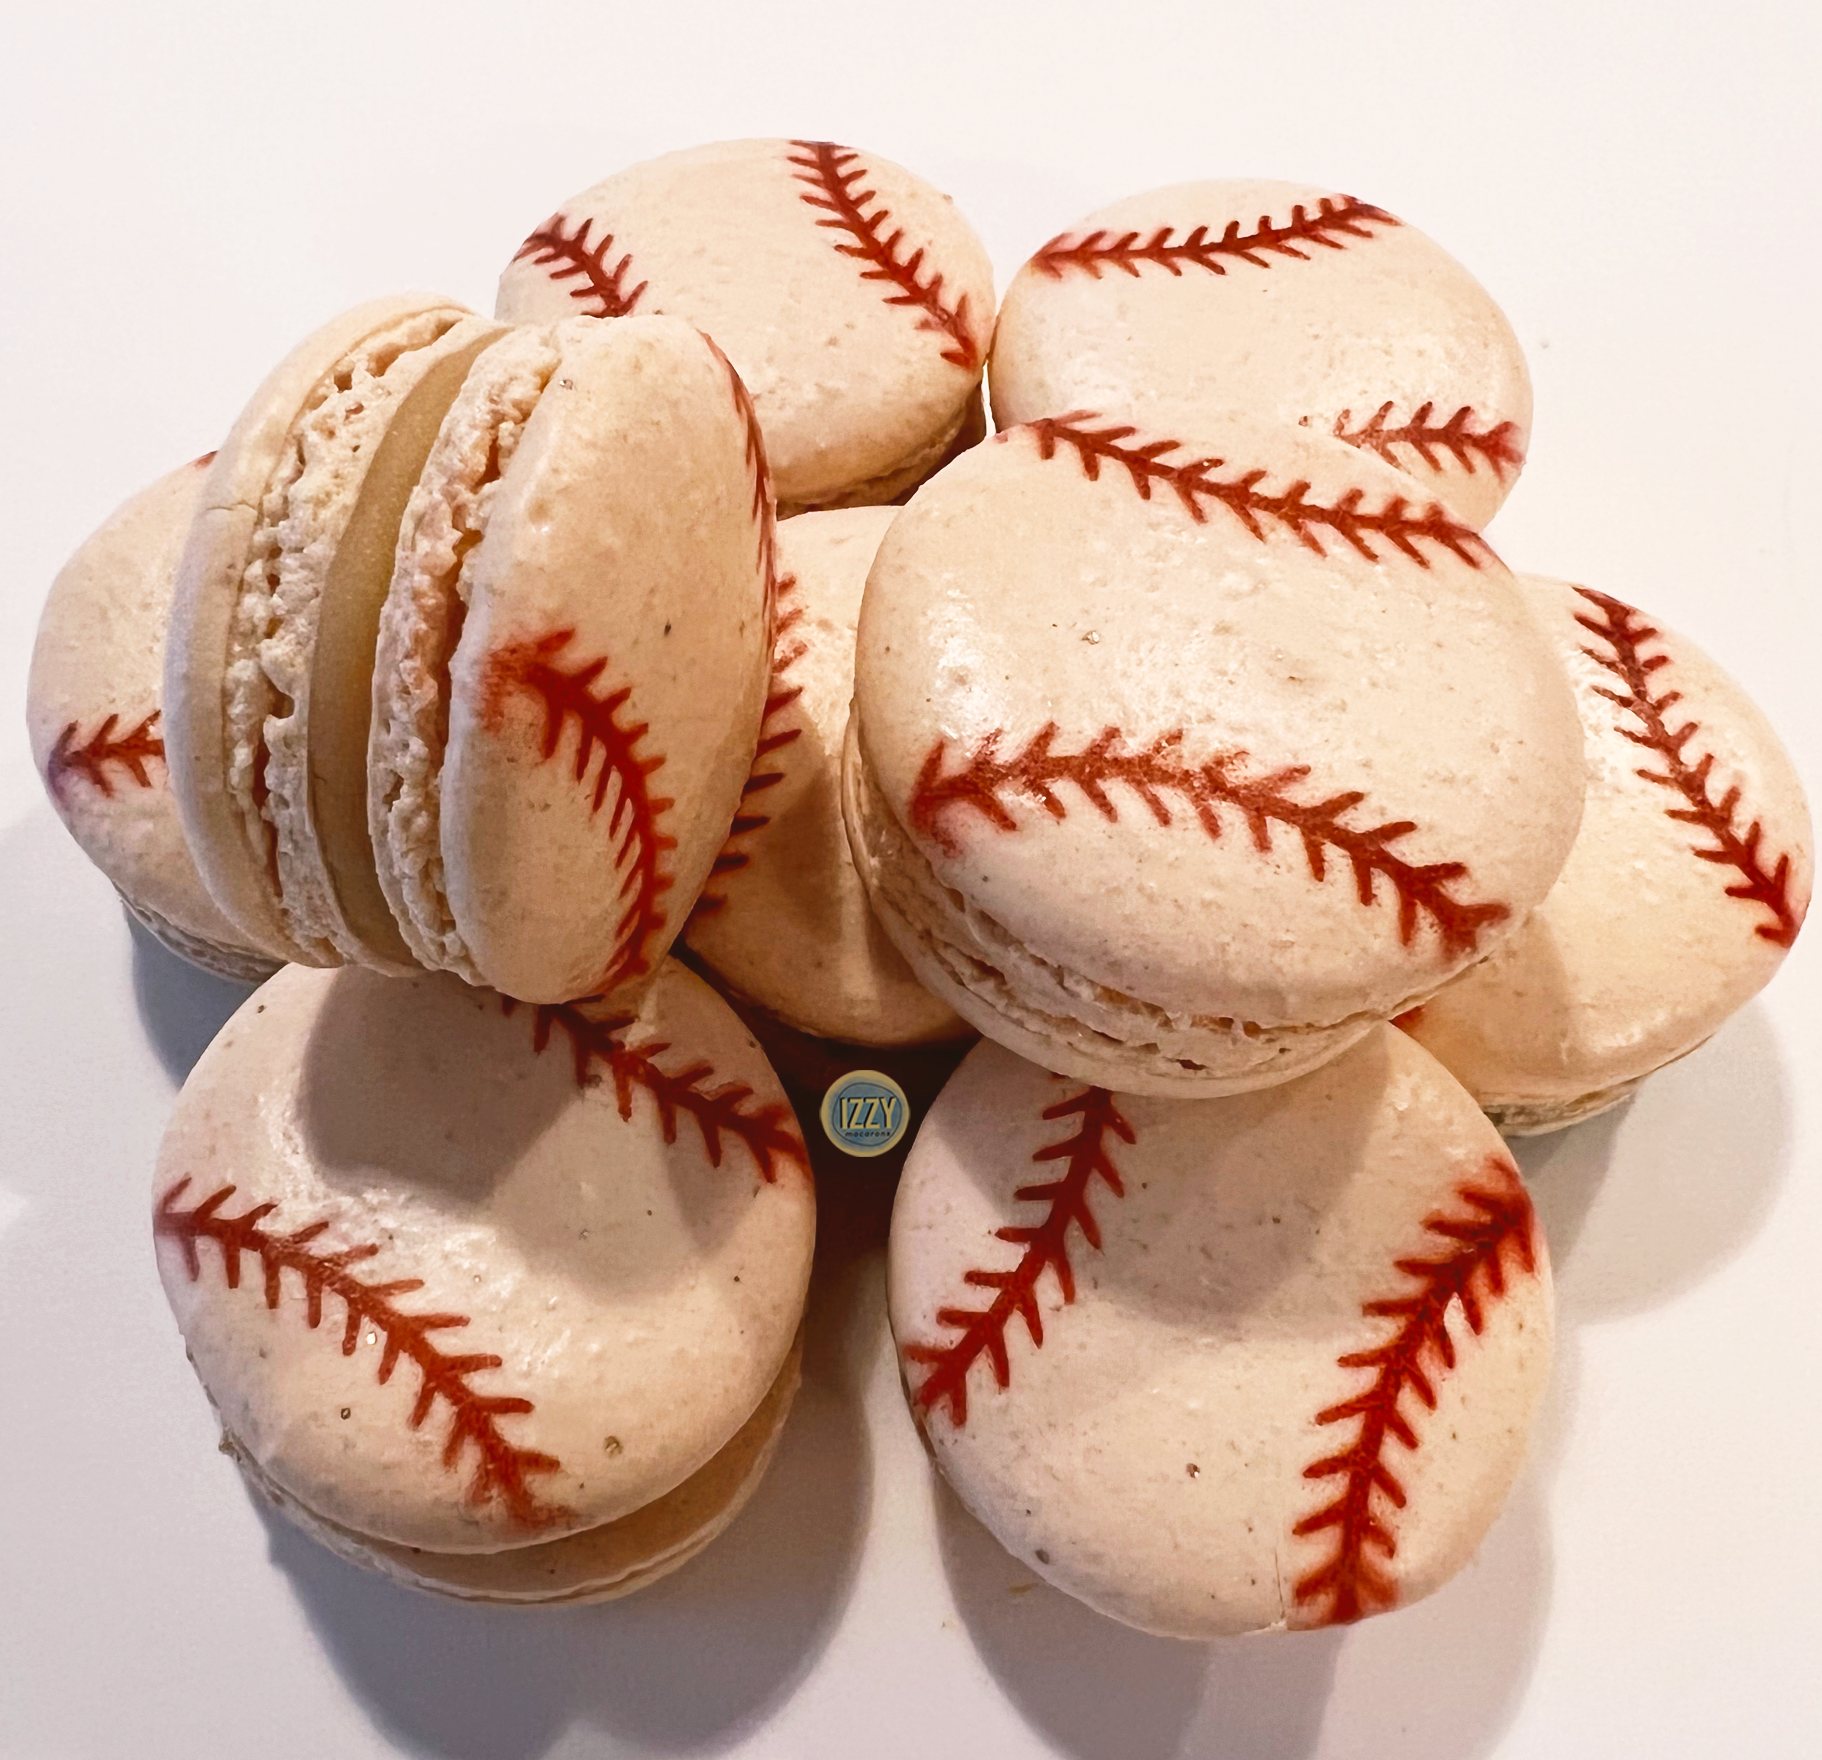 Baseball Macarons - Izzy Macarons